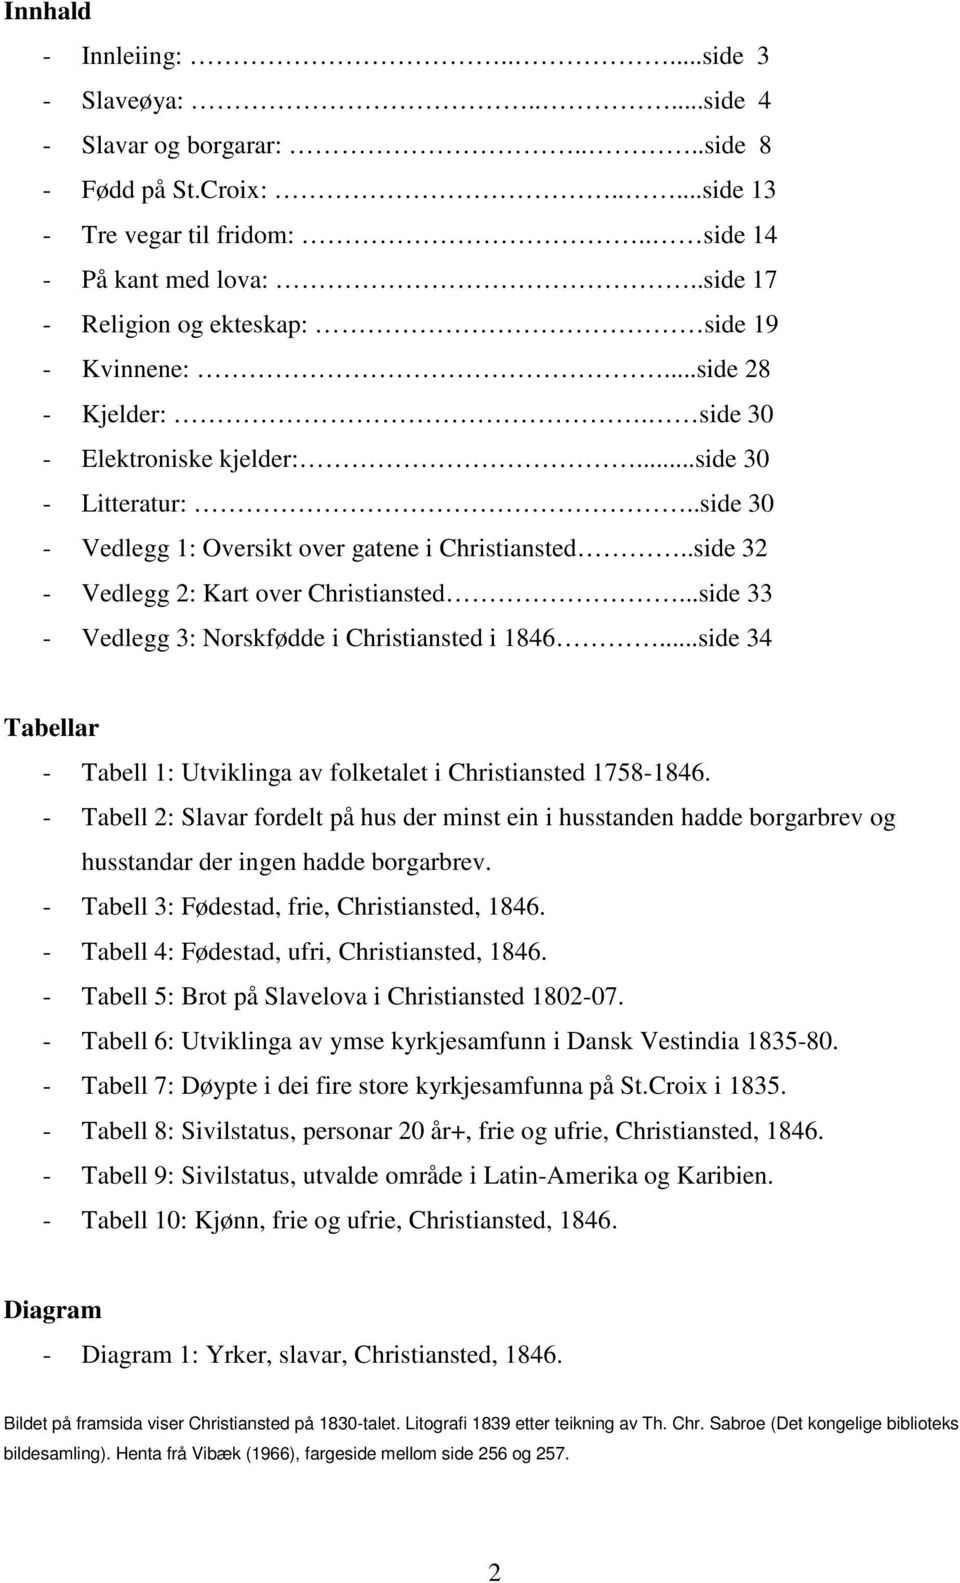 .side 32 - Vedlegg 2: Kart over Christiansted...side 33 - Vedlegg 3: Norskfødde i Christiansted i 1846...side 34 Tabellar - Tabell 1: Utviklinga av folketalet i Christiansted 1758-1846.